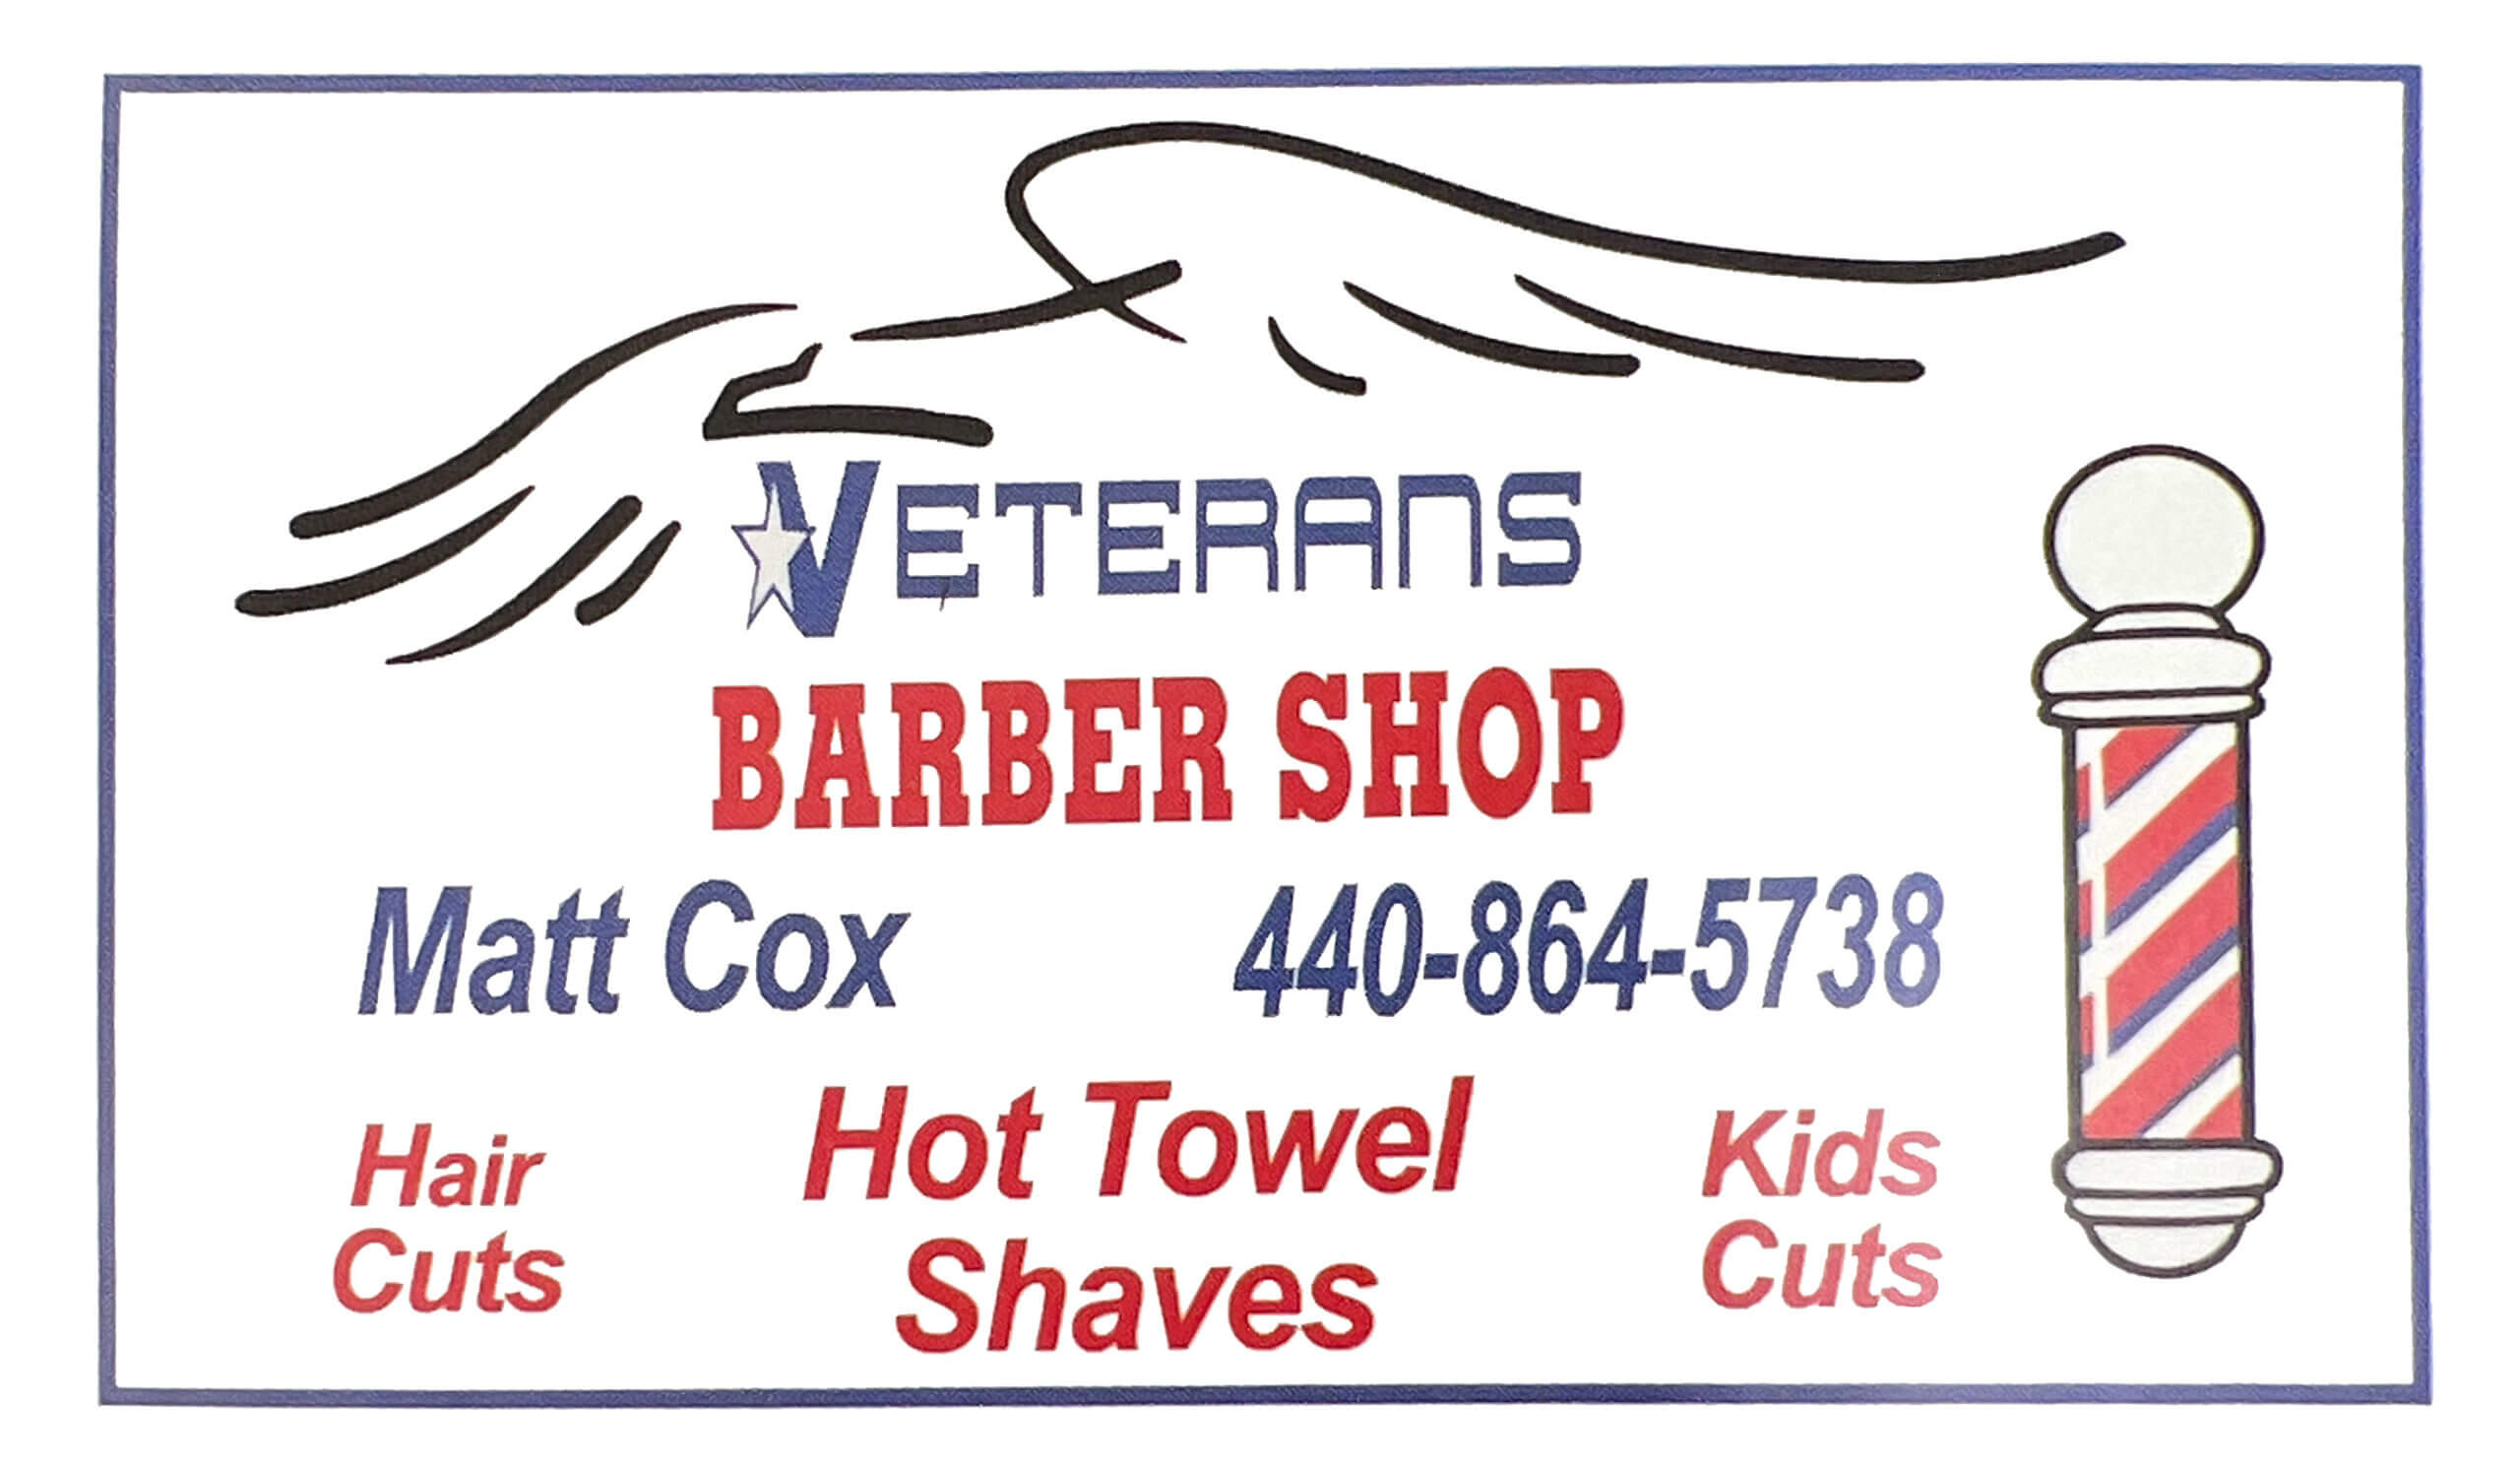 Veteran's Barbershop business logo